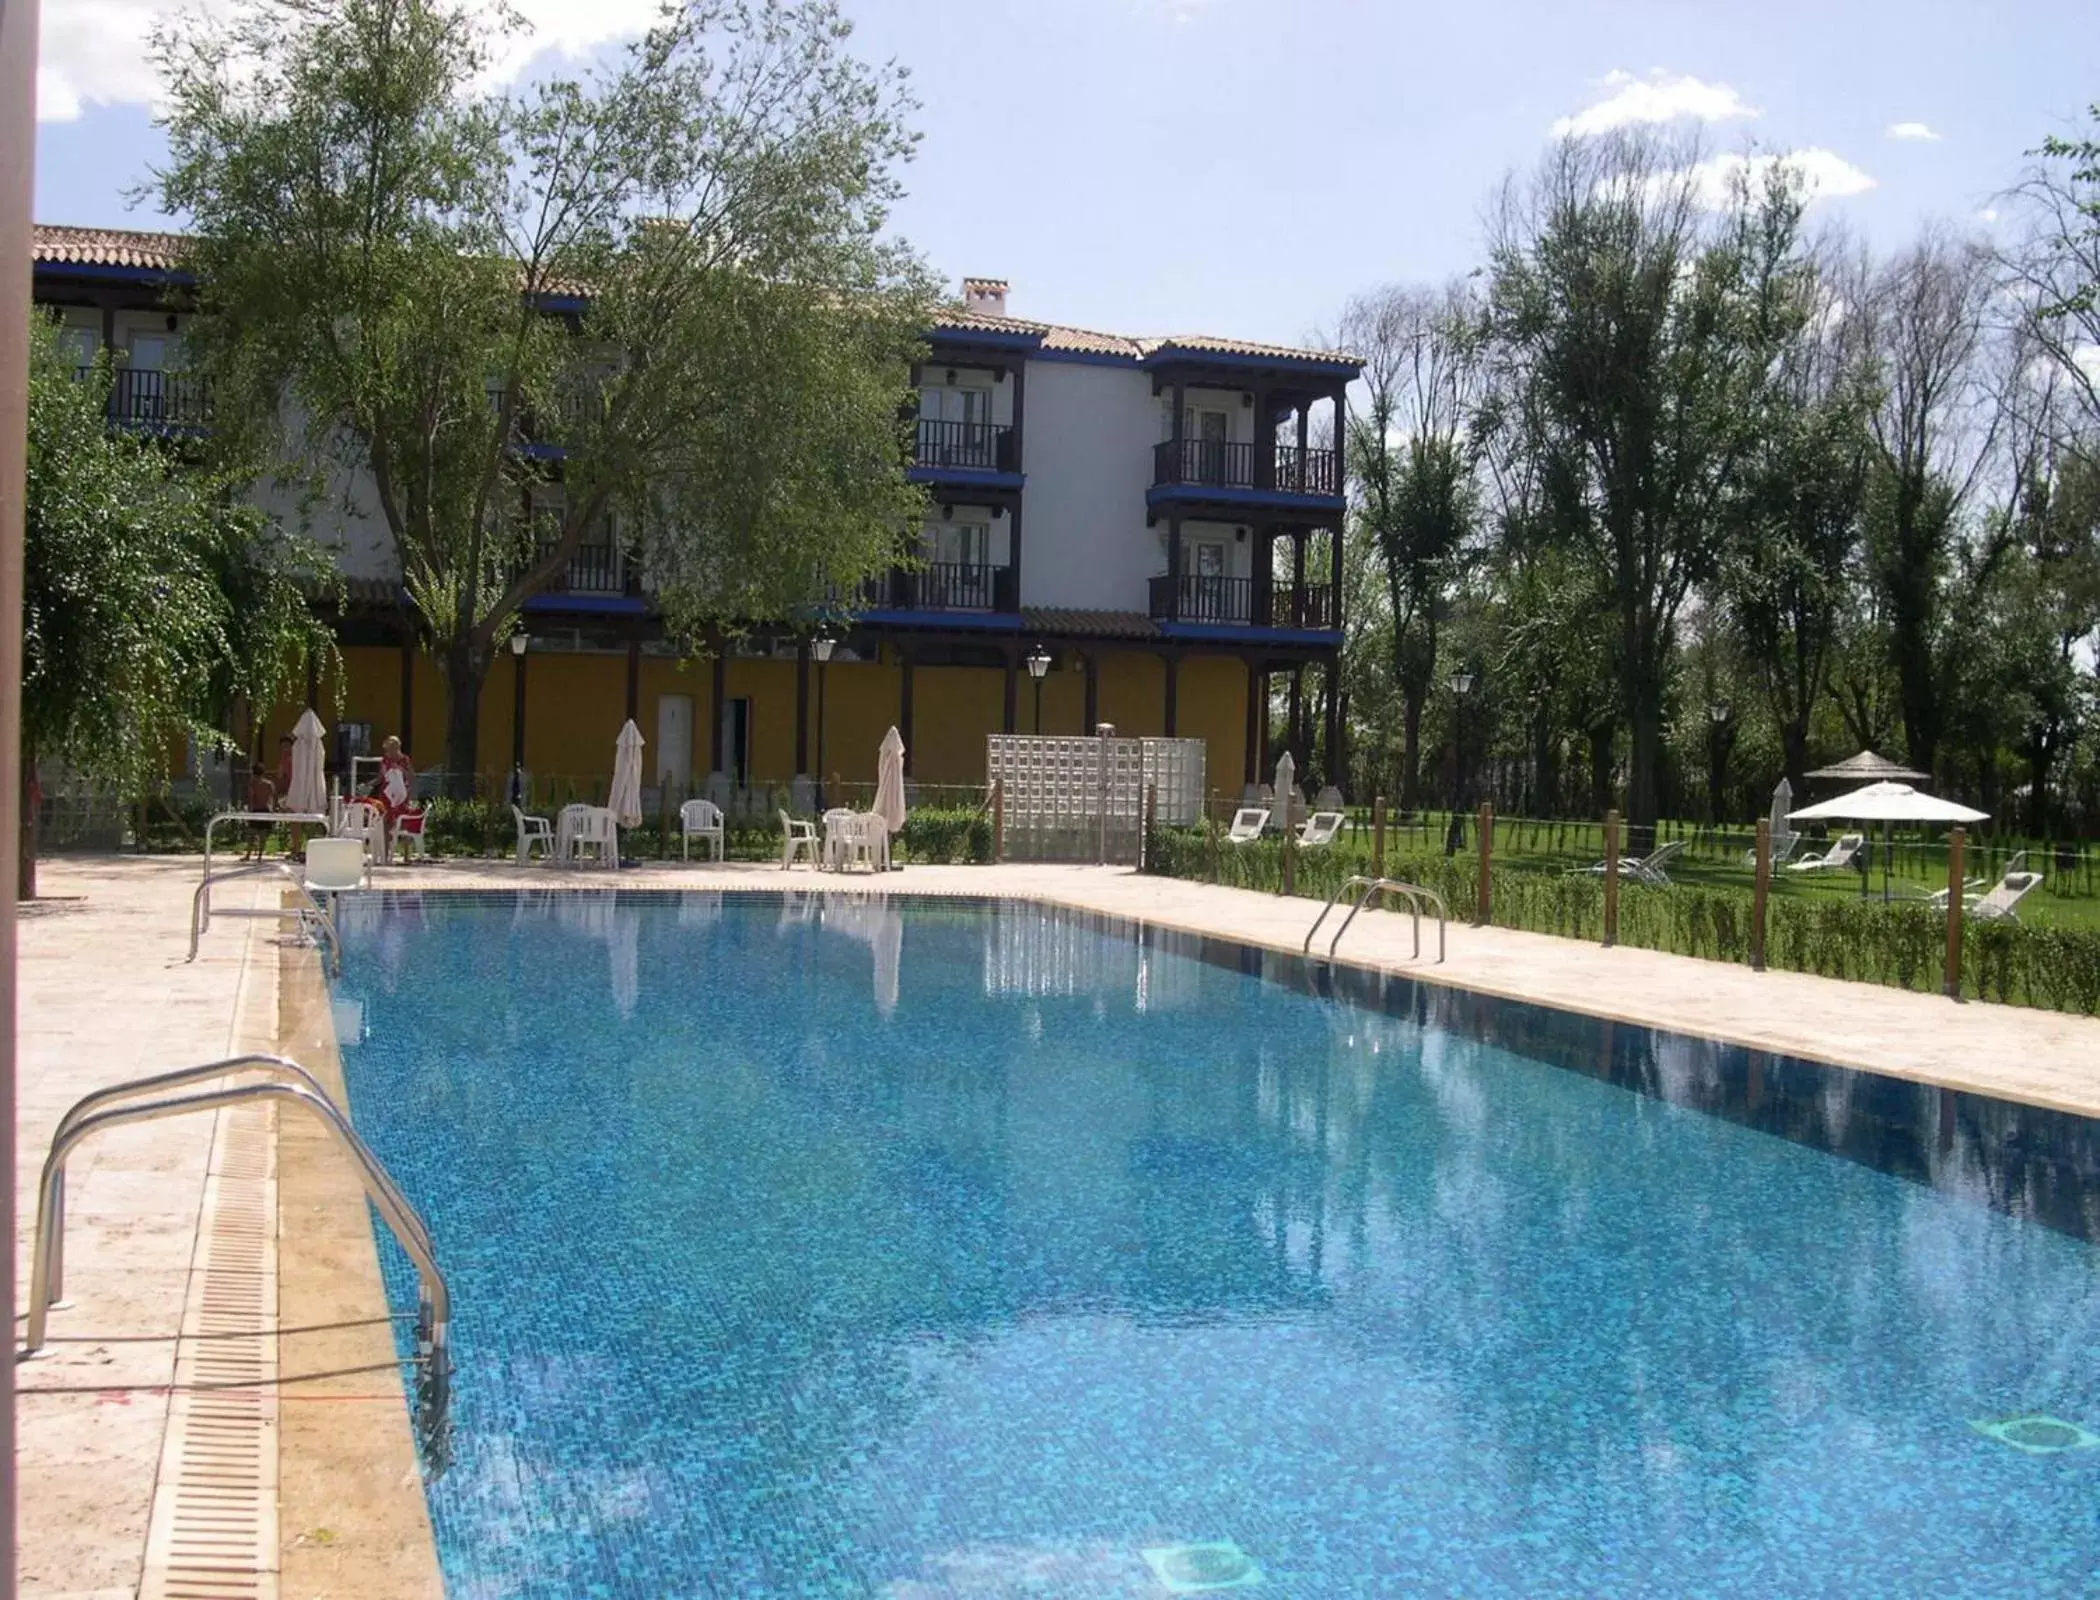 Swimming pool, Property Building in Parador de Manzanares